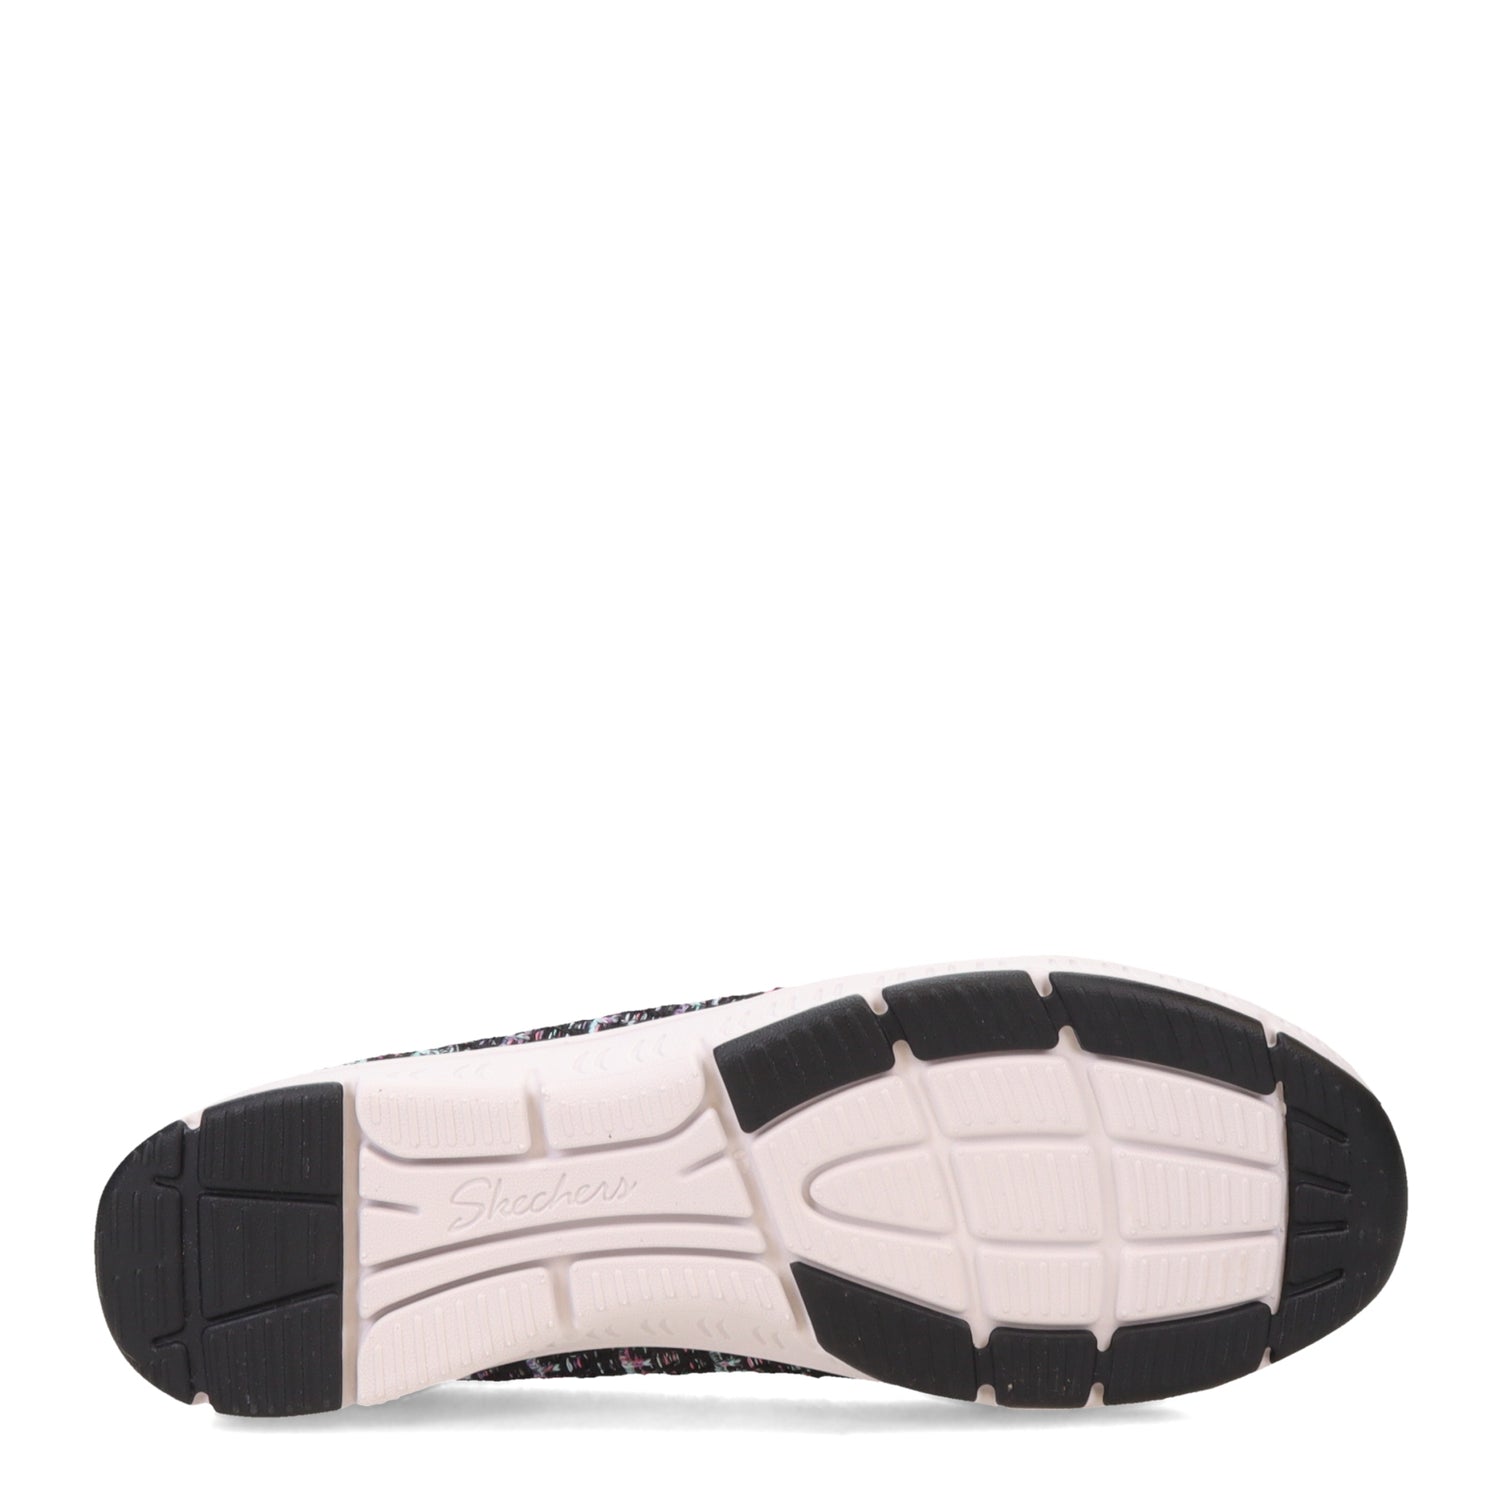 Peltz Shoes  Women's Skechers Be-Cool - Sherbet Skies Slip-On Black Multi 100367-BKMT